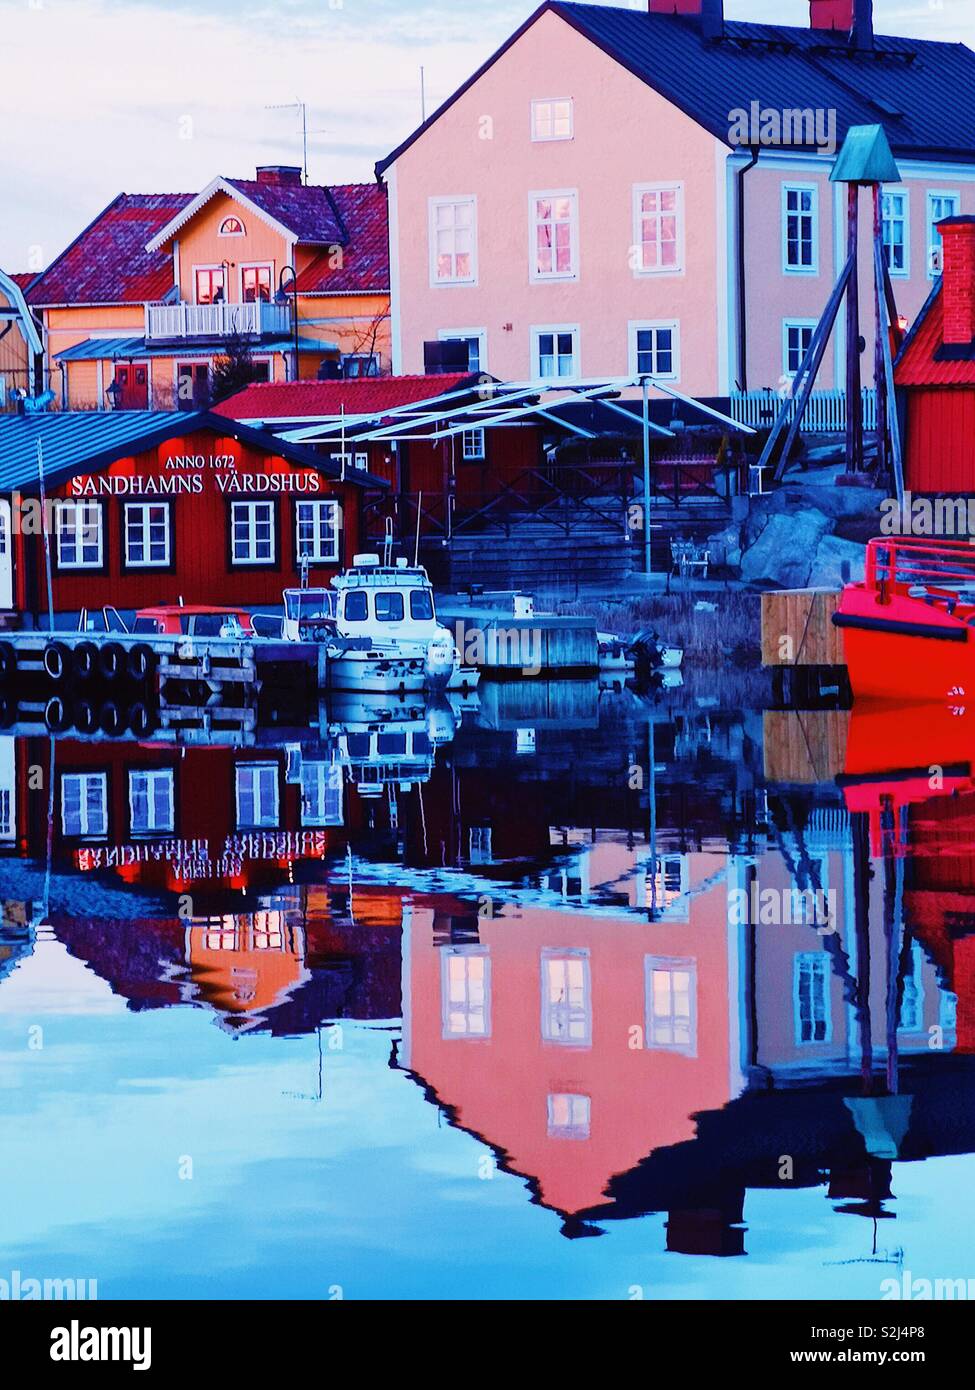 Dämmerung Reflexionen Sandhamn Hafen, Stockholmer Schären, Schweden, Skandinavien. Insel in den äußeren Schären beliebt für Segeln und Yachting seit dem 19. Jahrhundert Stockfoto